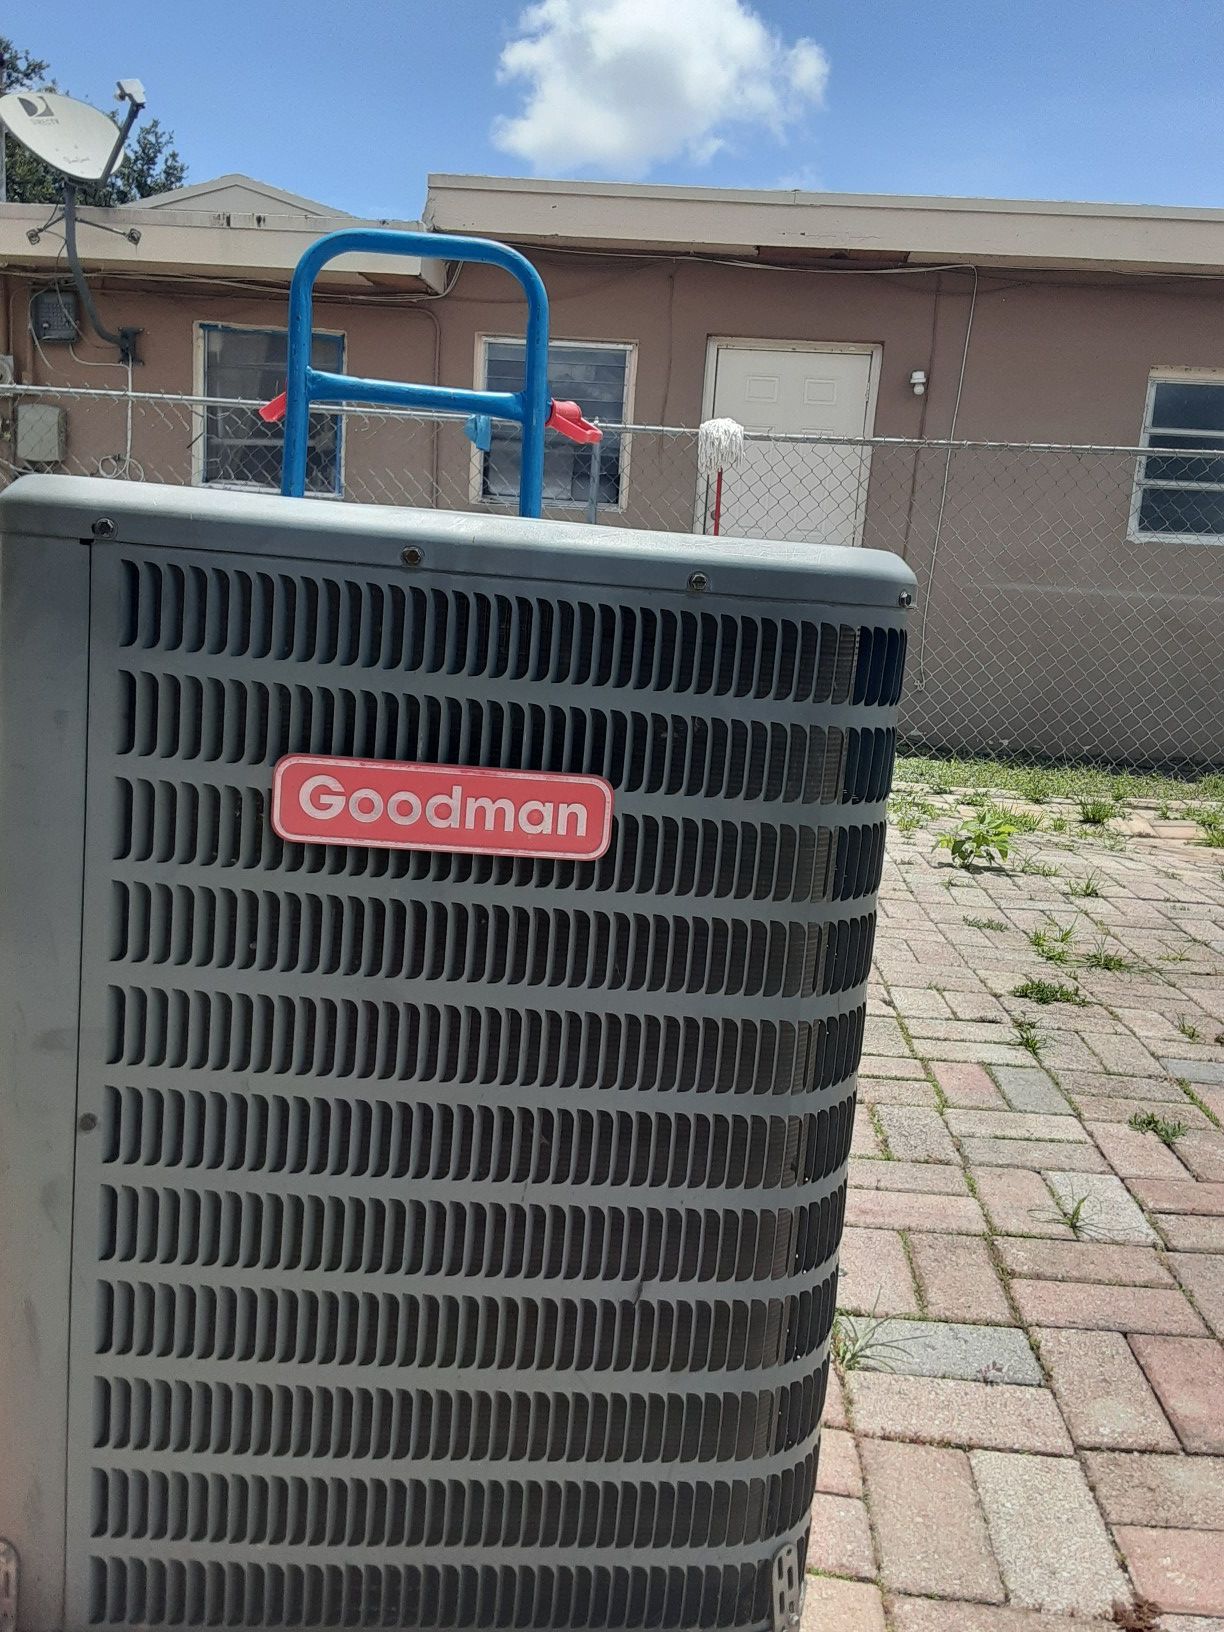 Goodman condenser unit r410 refrigerant in excellent condition